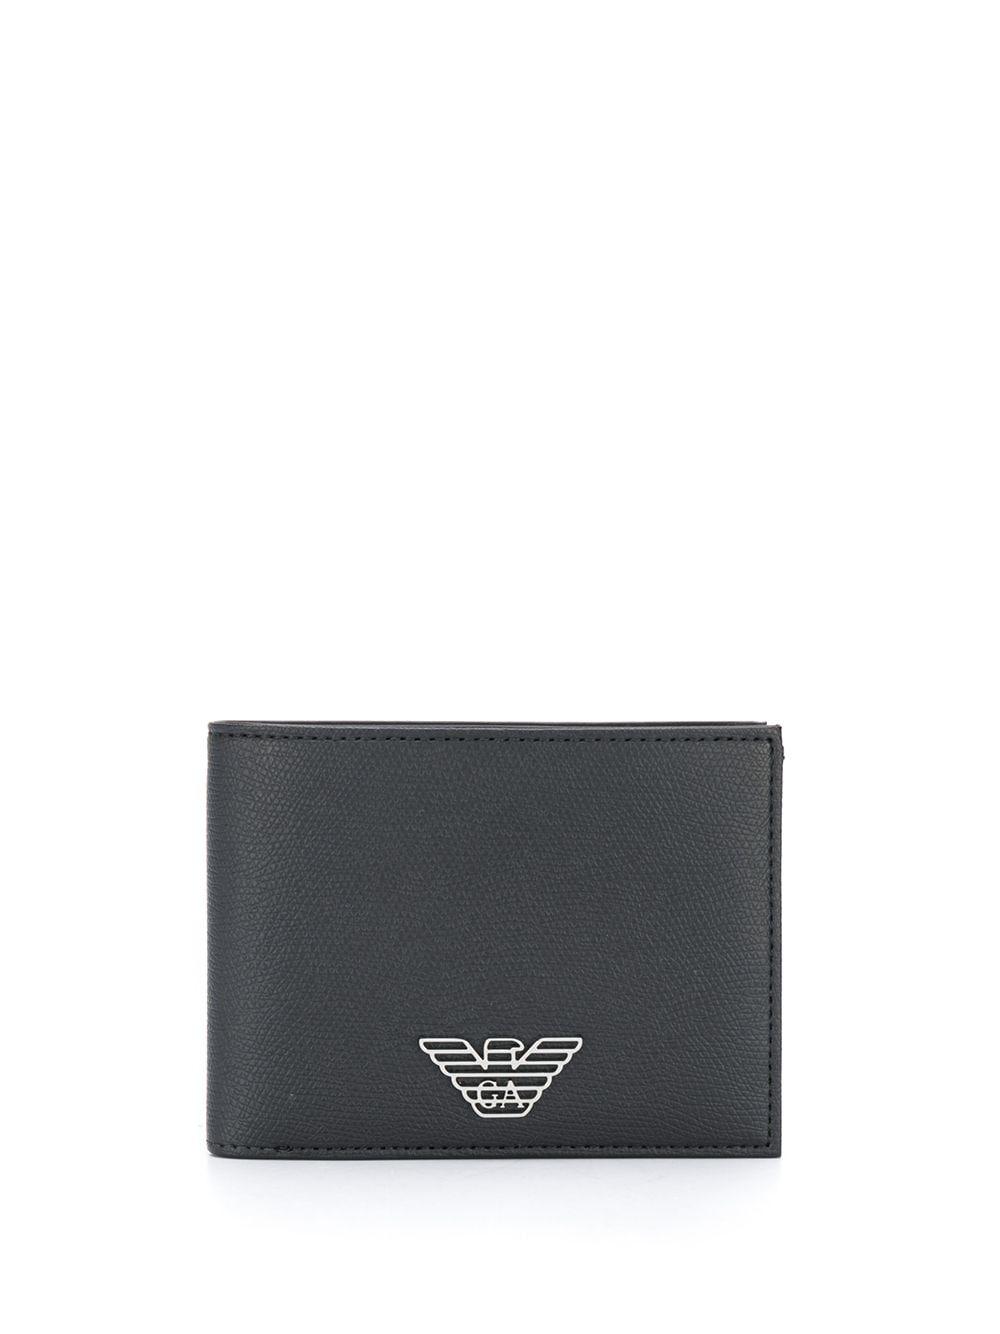 фото Emporio armani кошелек в два сложения с металлическим логотипом